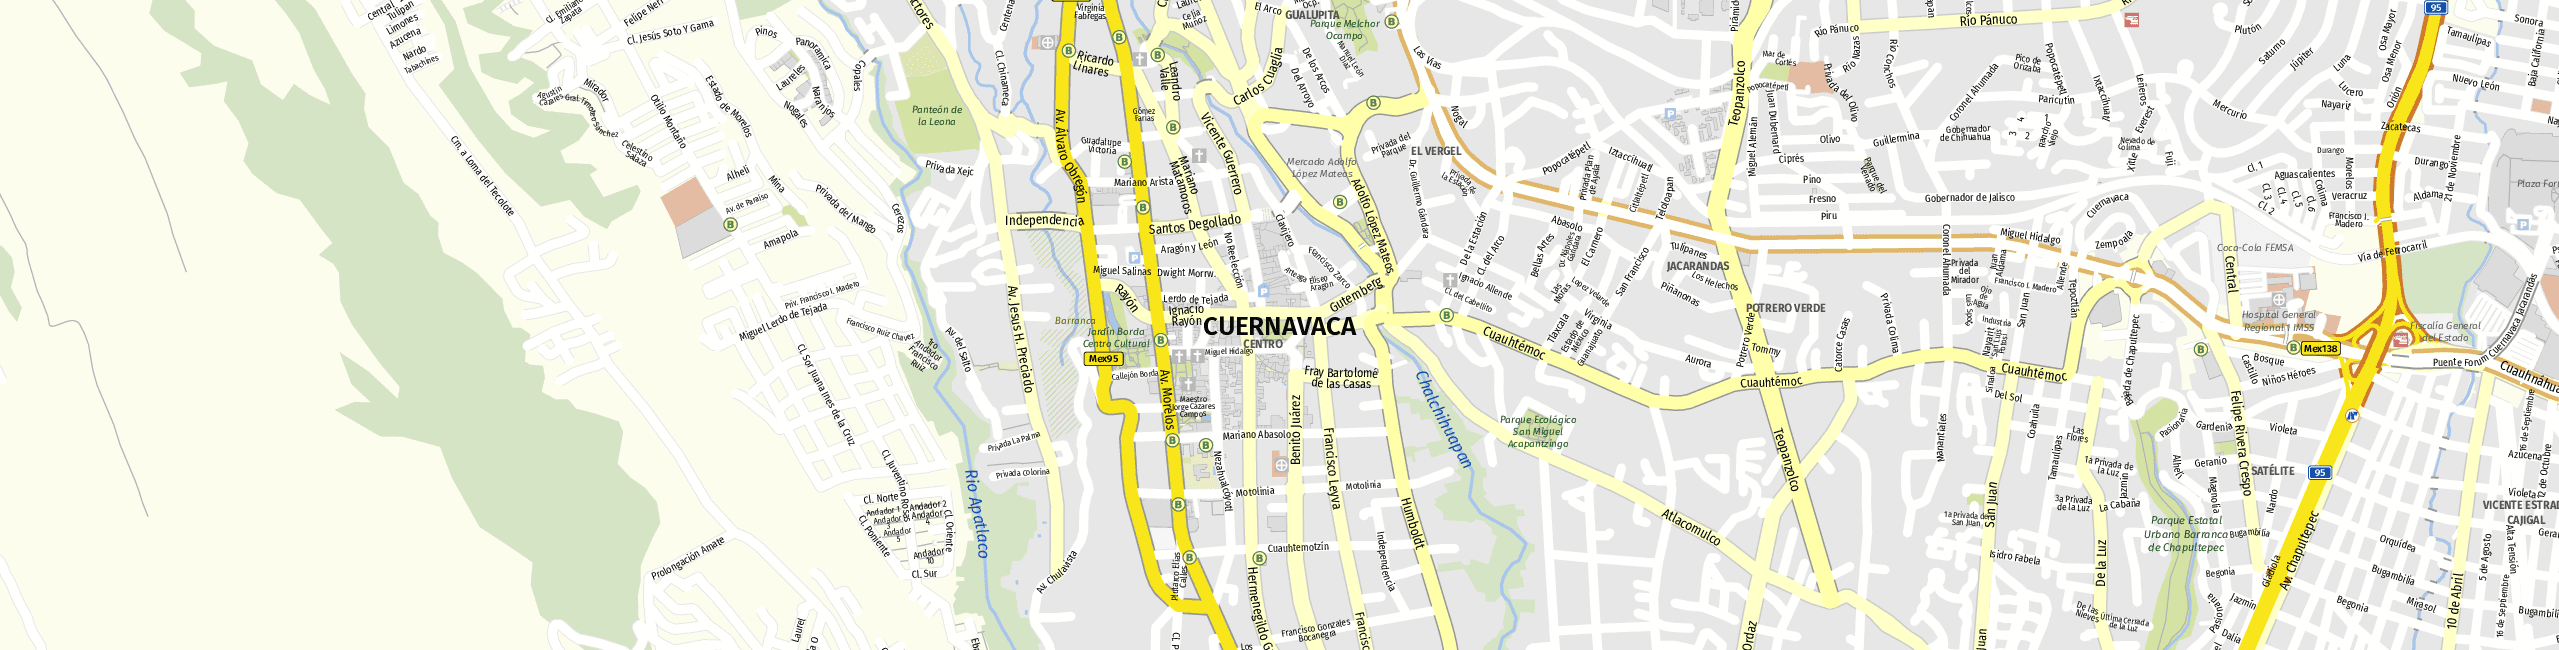 Stadtplan Cuernavaca zum Downloaden.